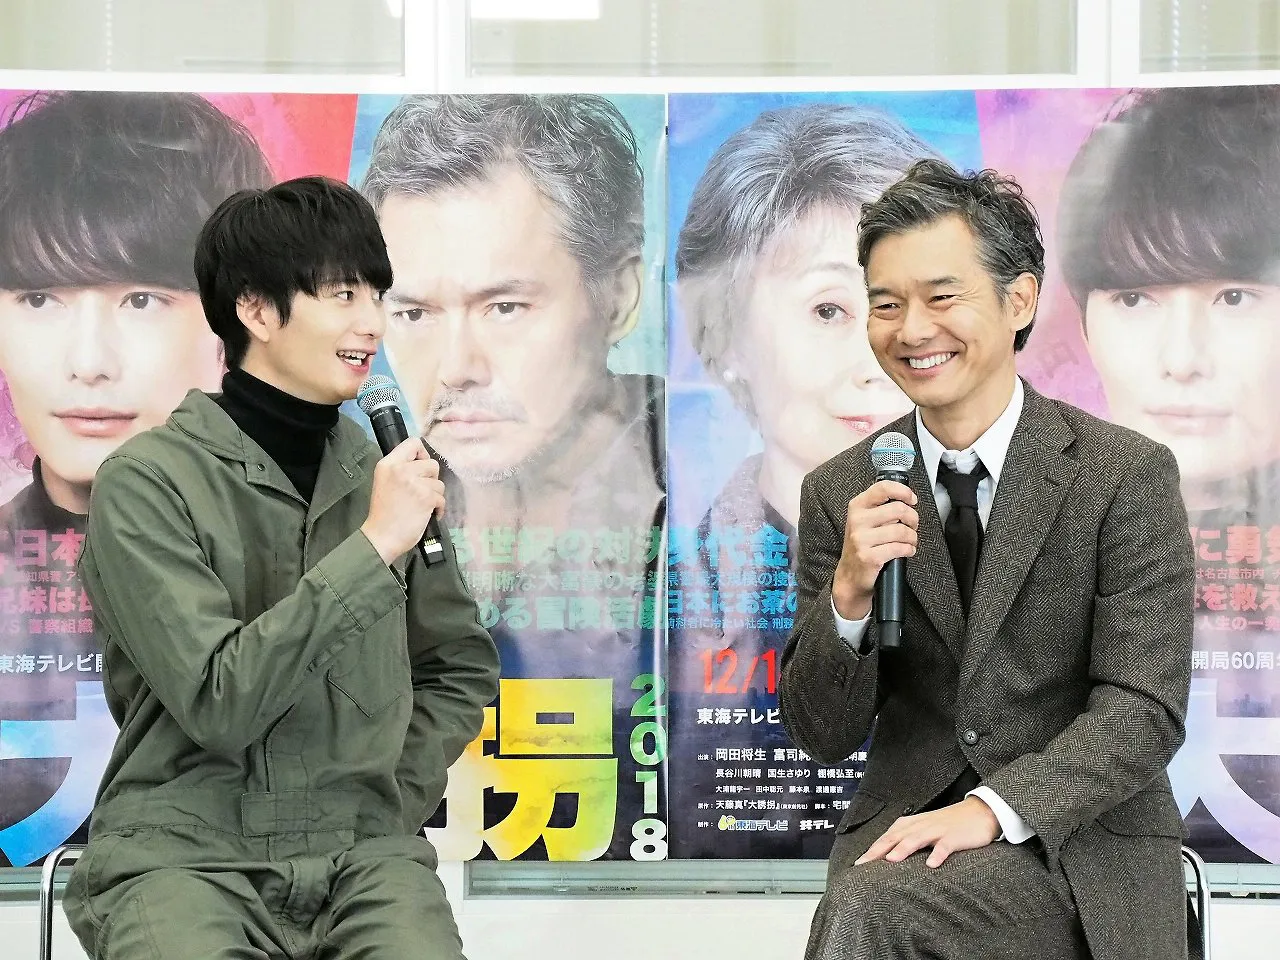 「大誘拐2018」の役衣装で登壇した岡田将生(左)と渡部篤郎(右)